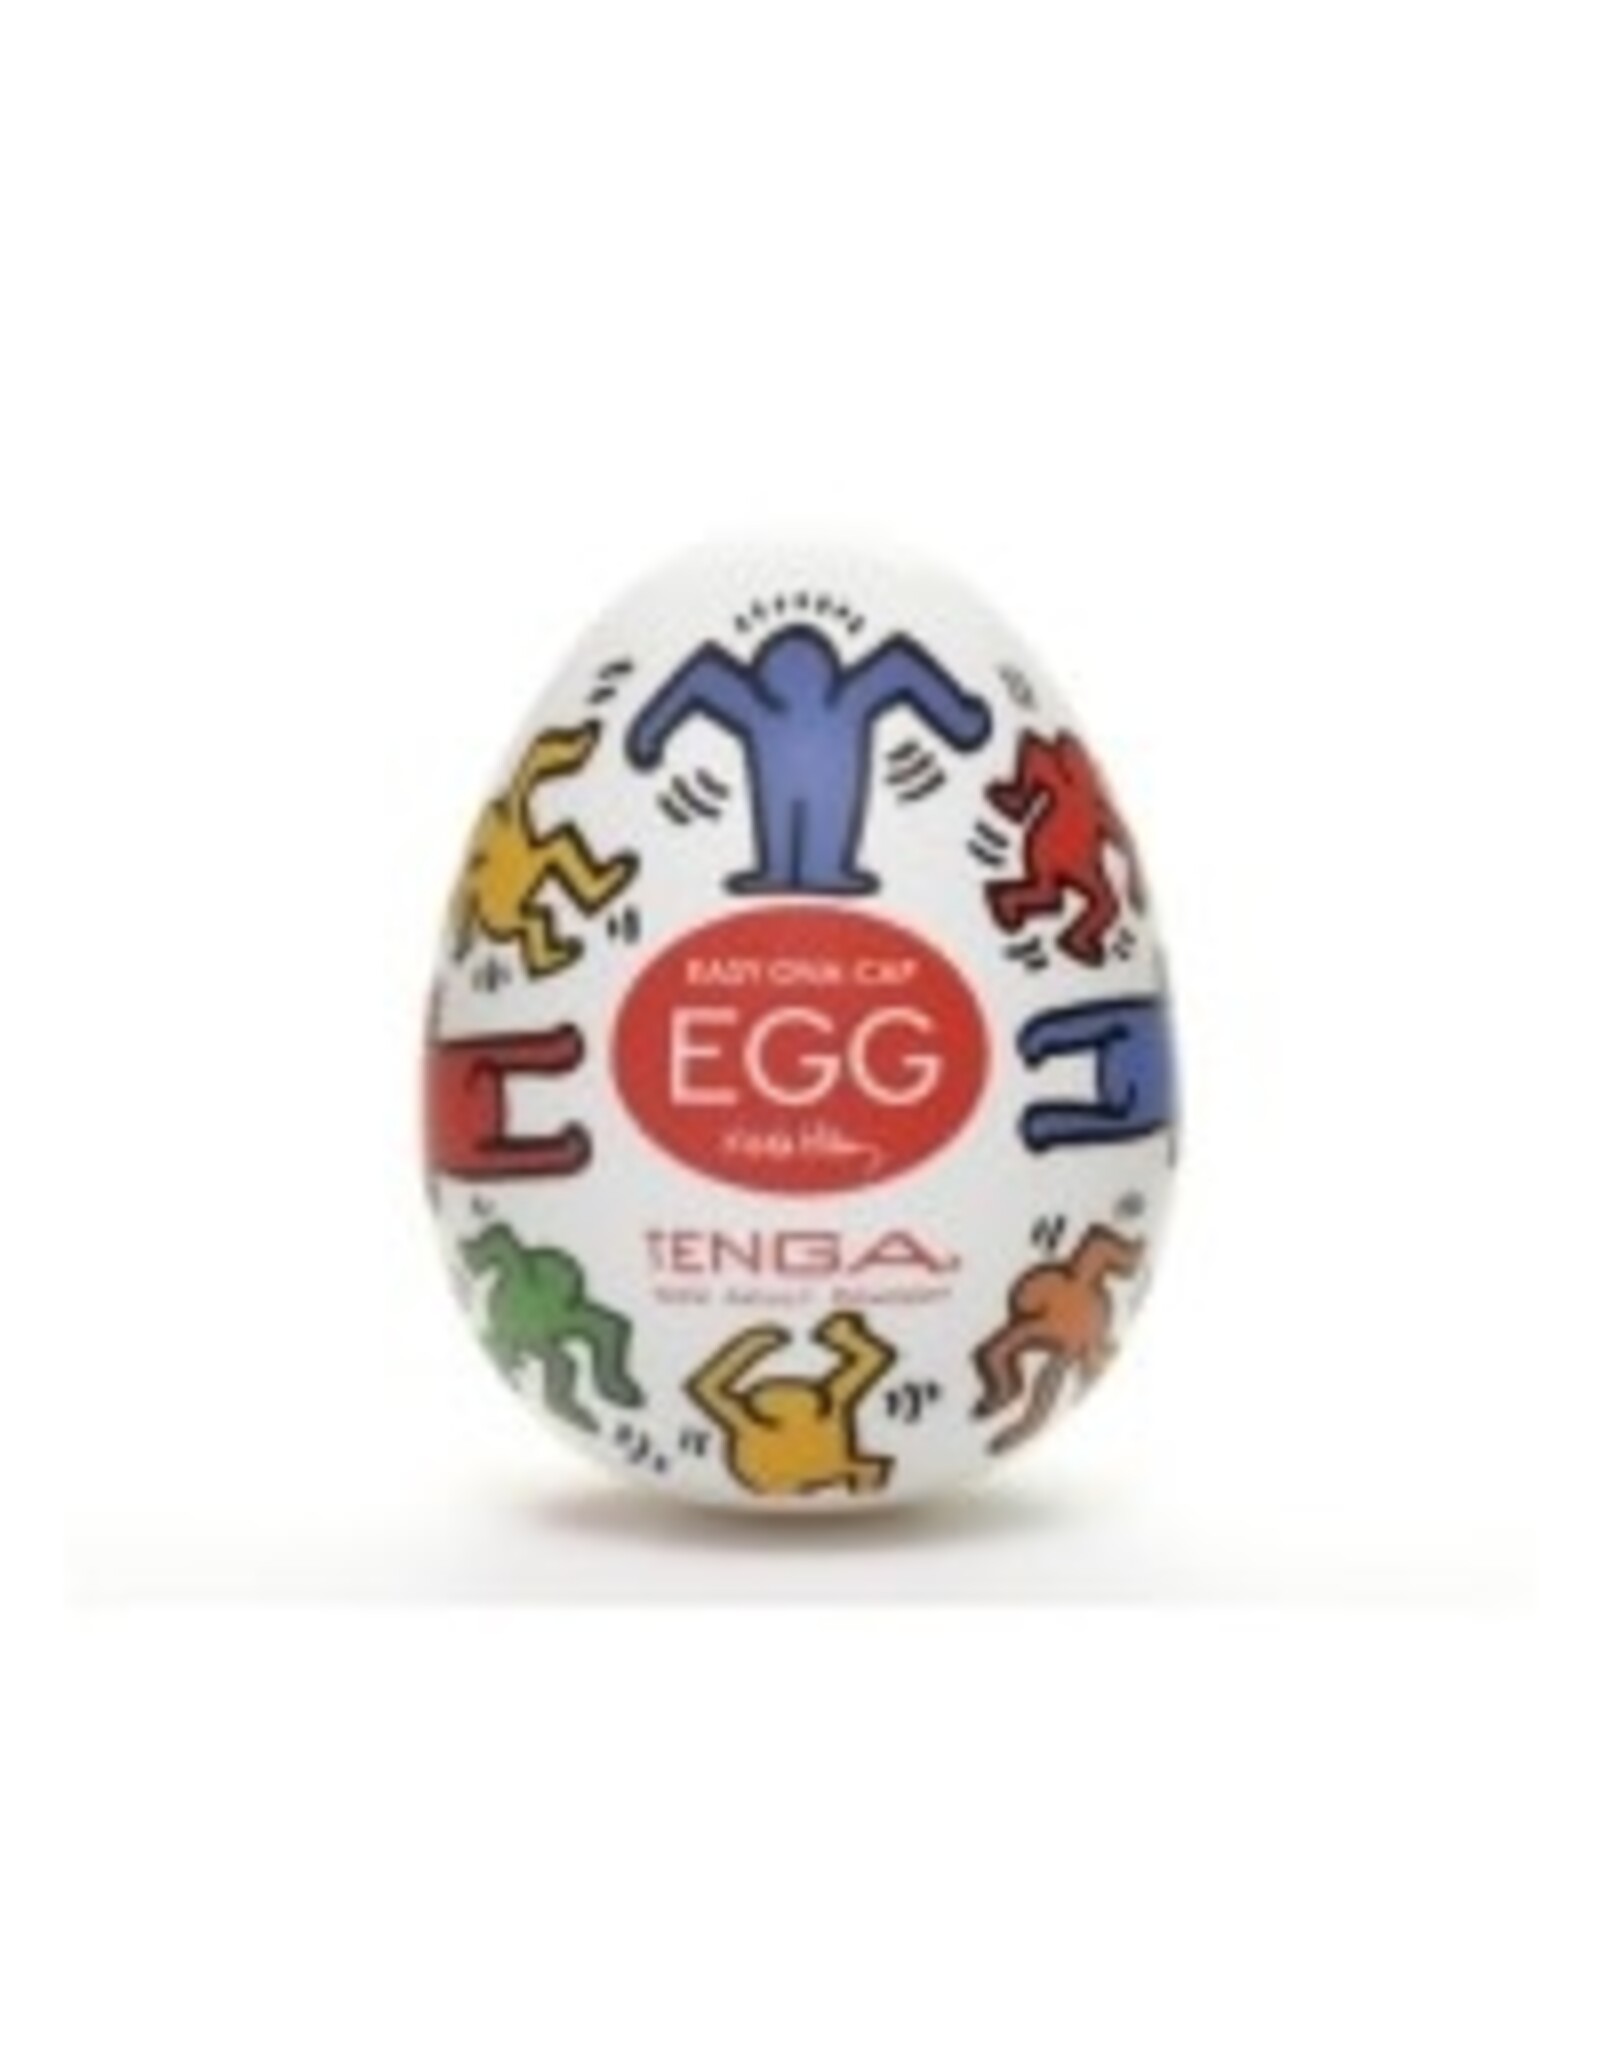 Tenga Tenga - Keith Haring Edition - Egg Dance